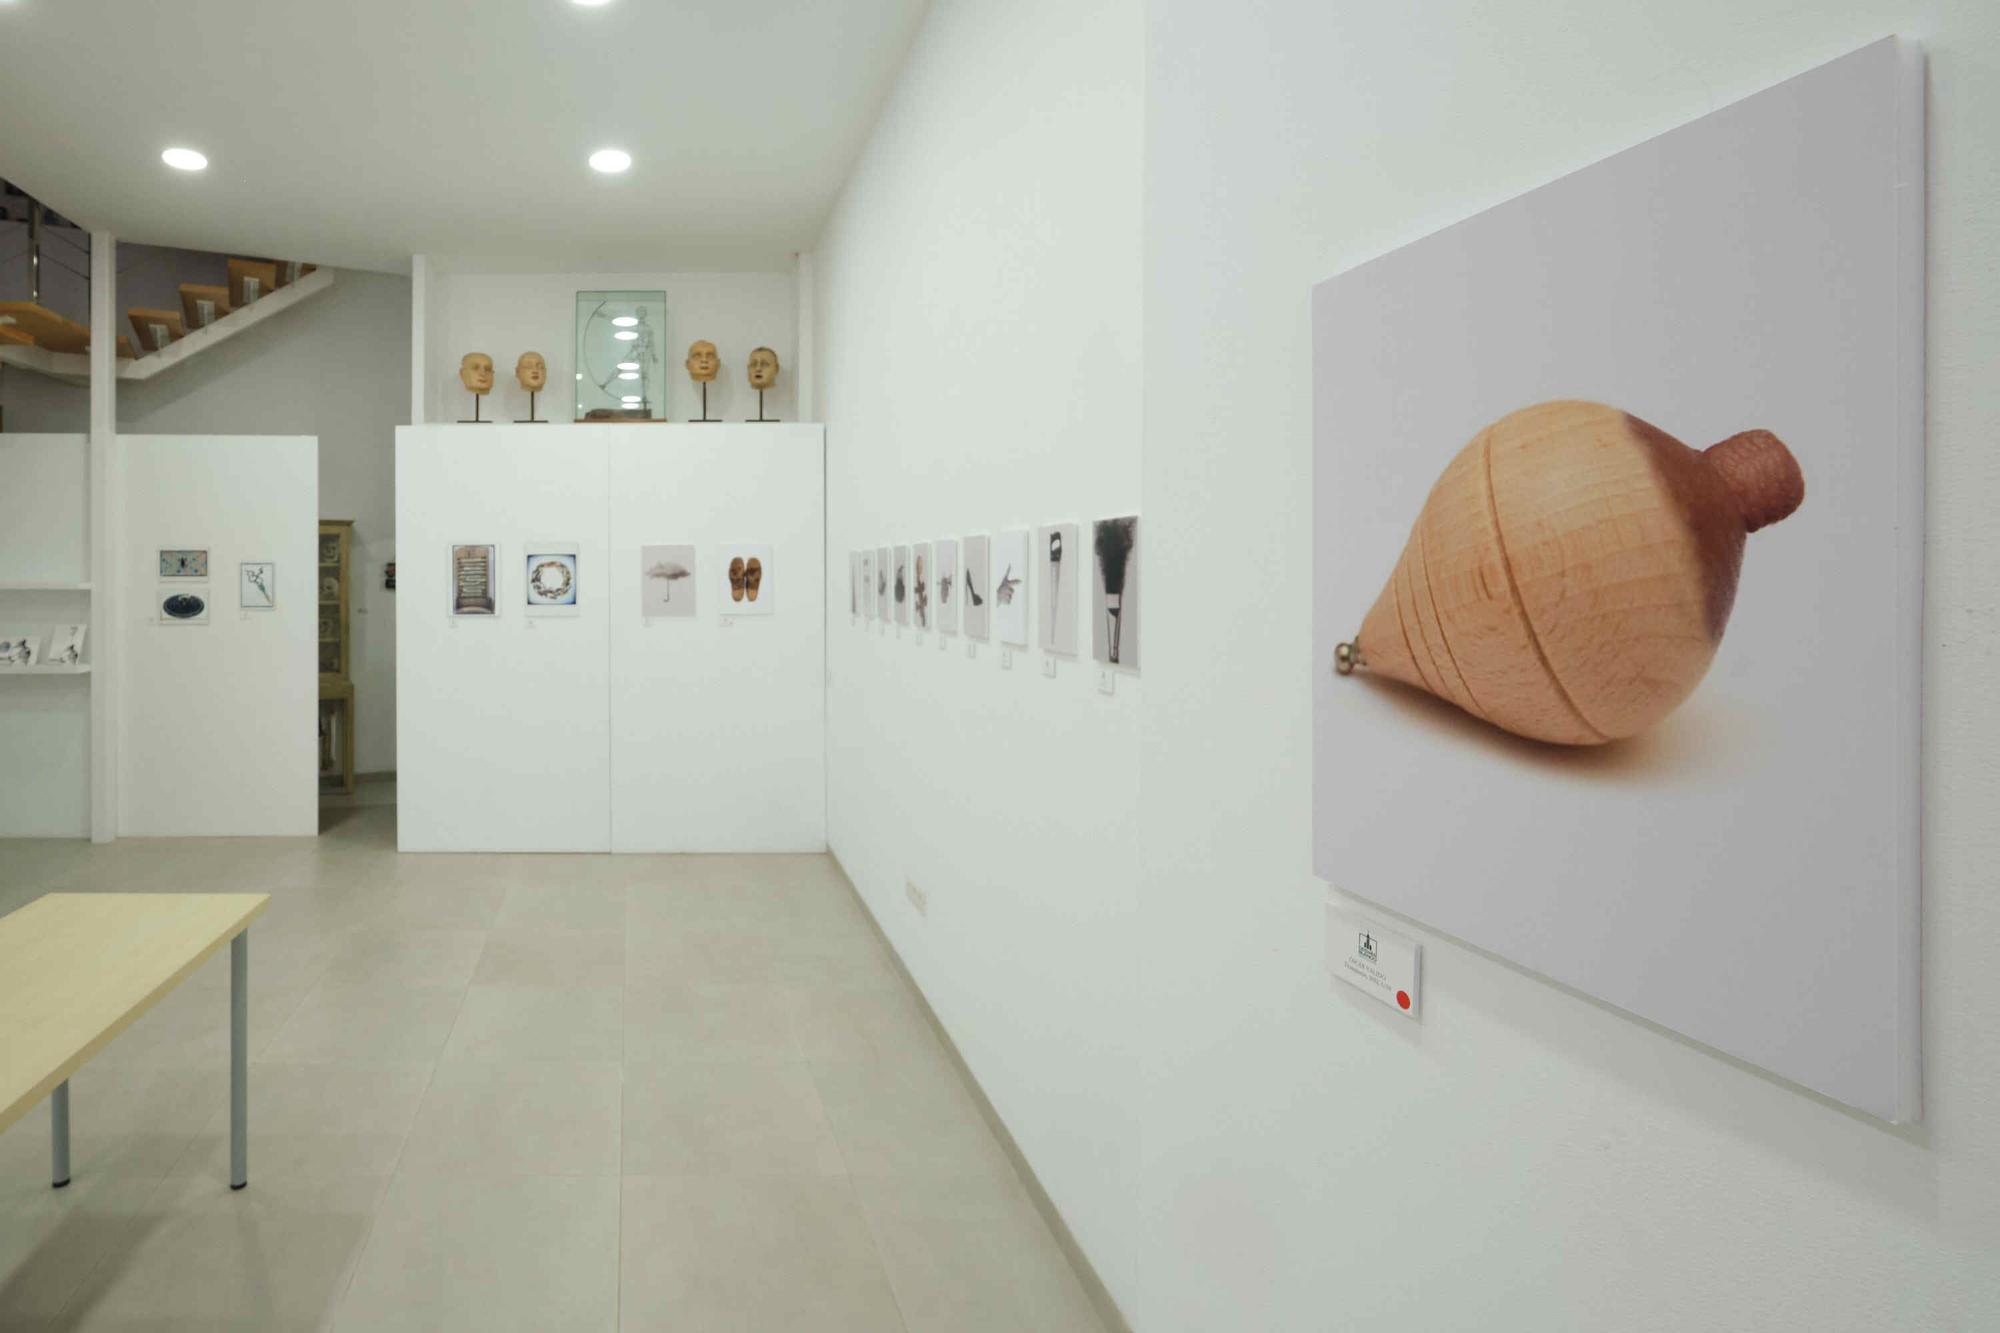 Fotografías de la exposición 'La mirada encontrada' de Valido y Hiernaux en Desván Blanco